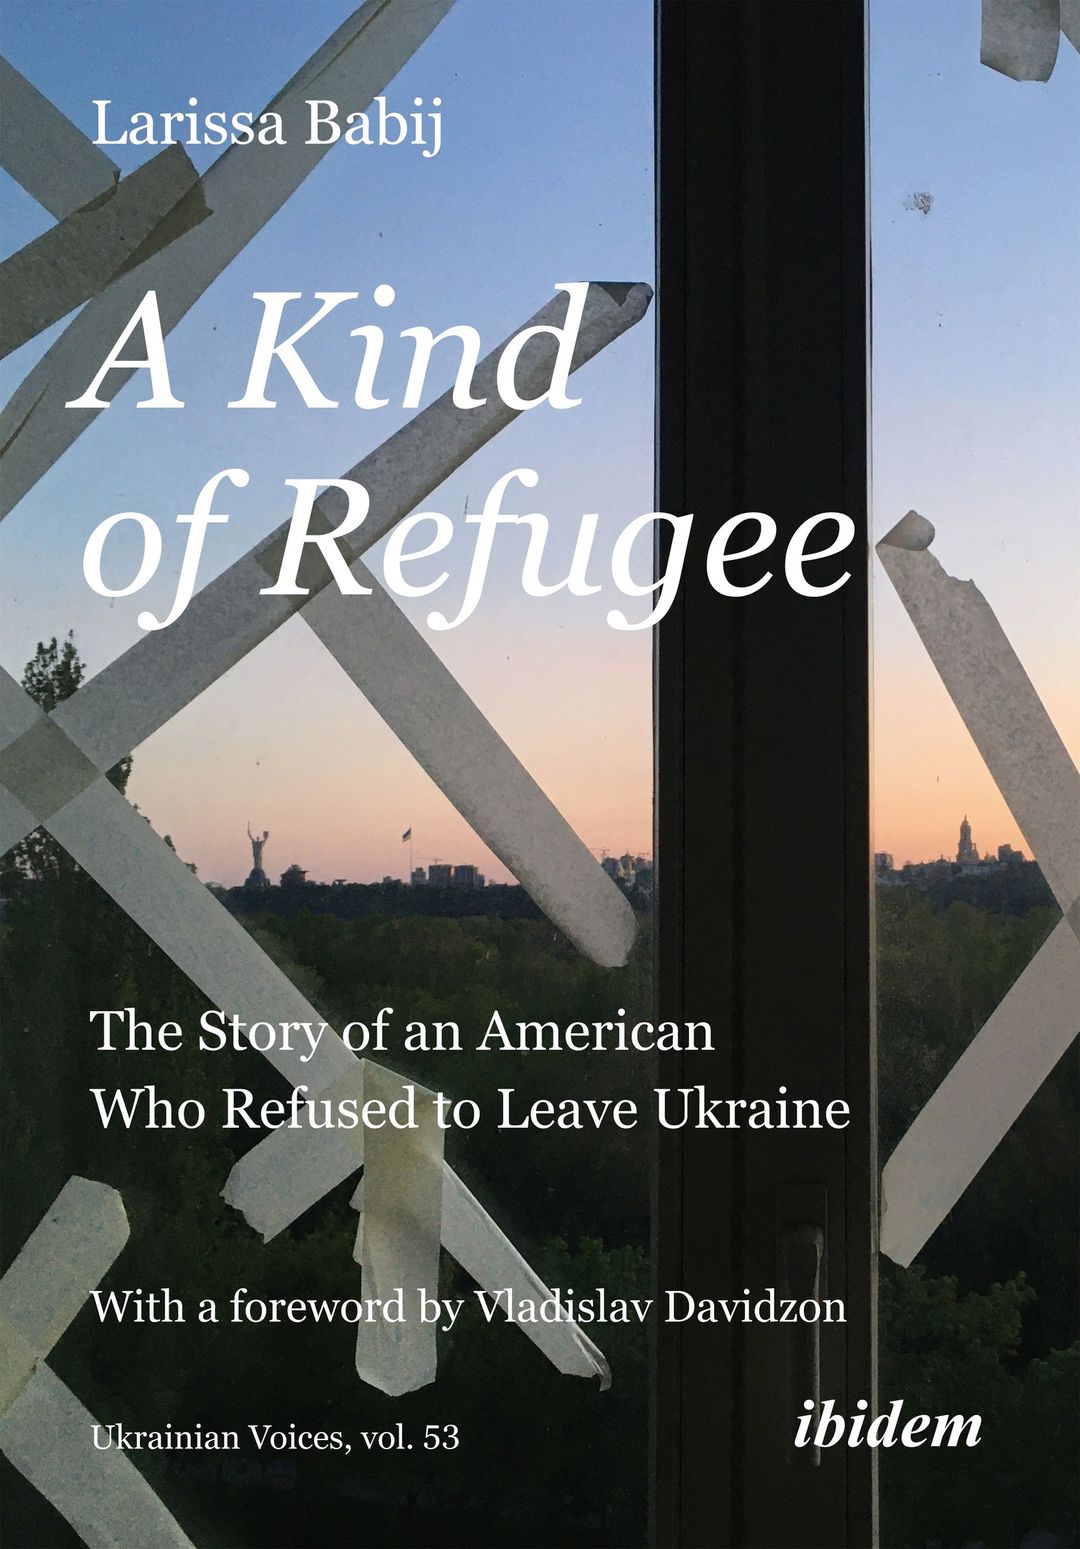 A Kind of Refugee - Book Presentation